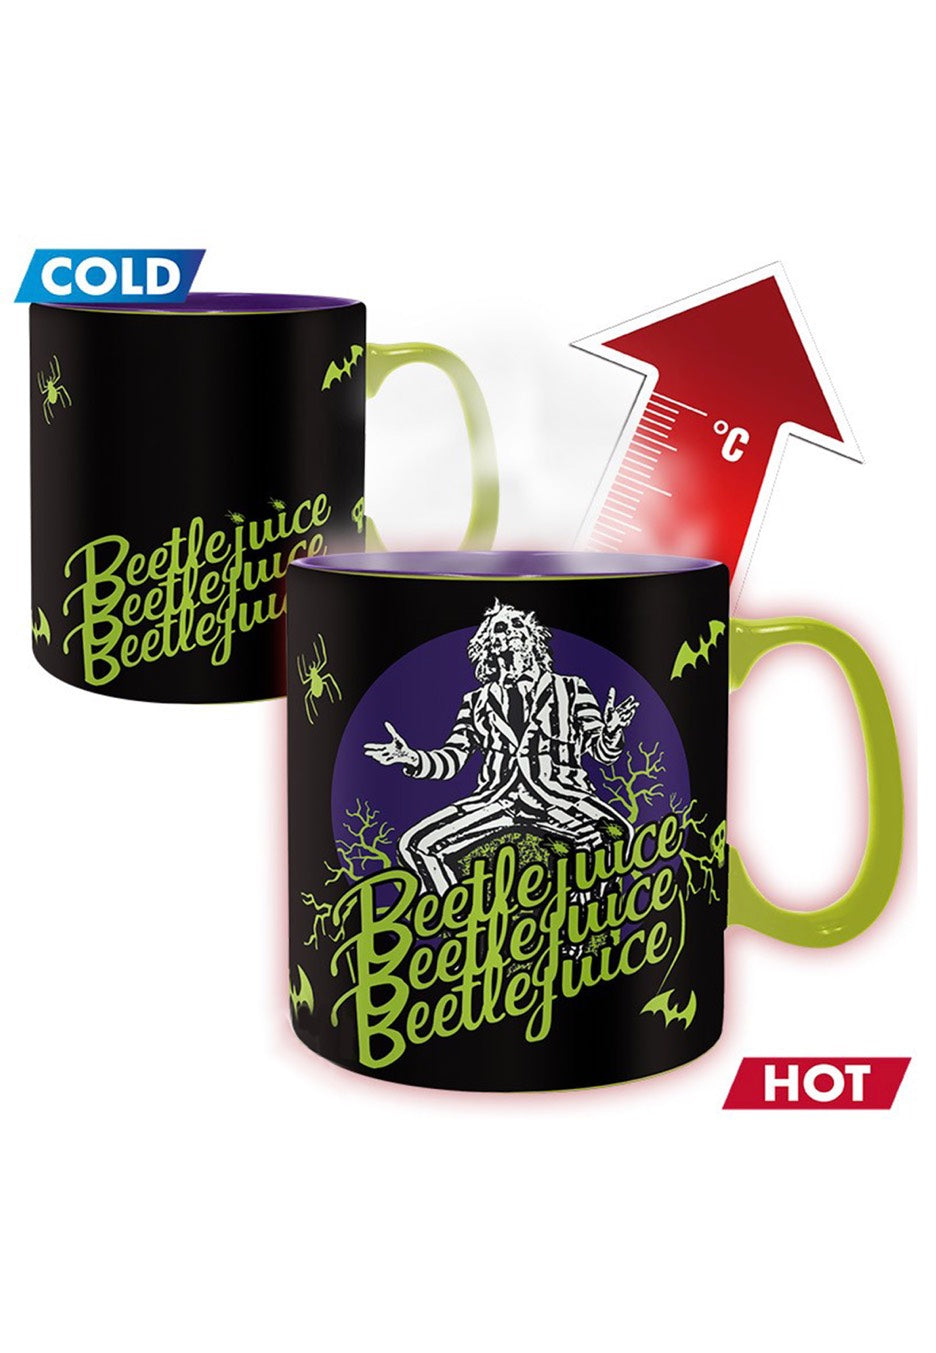 Beetlejuice - Beetlejuice Beetlejuice Heat Change - Mug | Neutral-Image